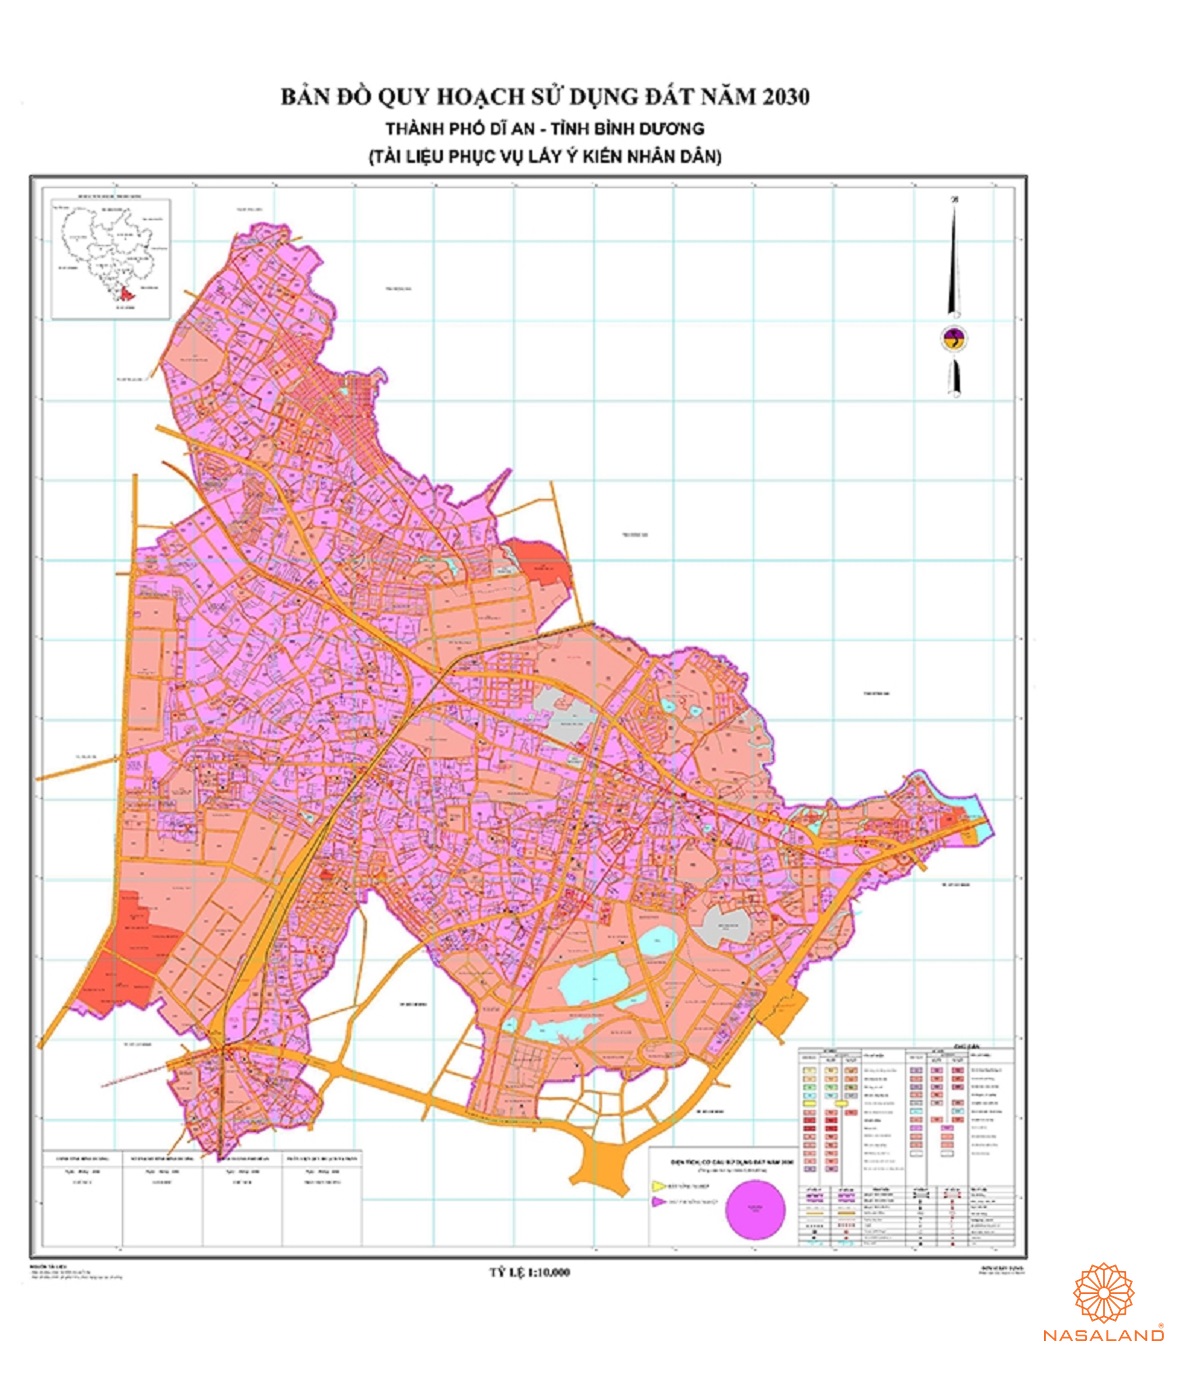 Quy hoạch sử dụng đất Thành phố Dĩ An thể hiện trên bản đồ quy hoạch phân khu tỷ lệ 1/2000 của Tỉnh Bình Dương